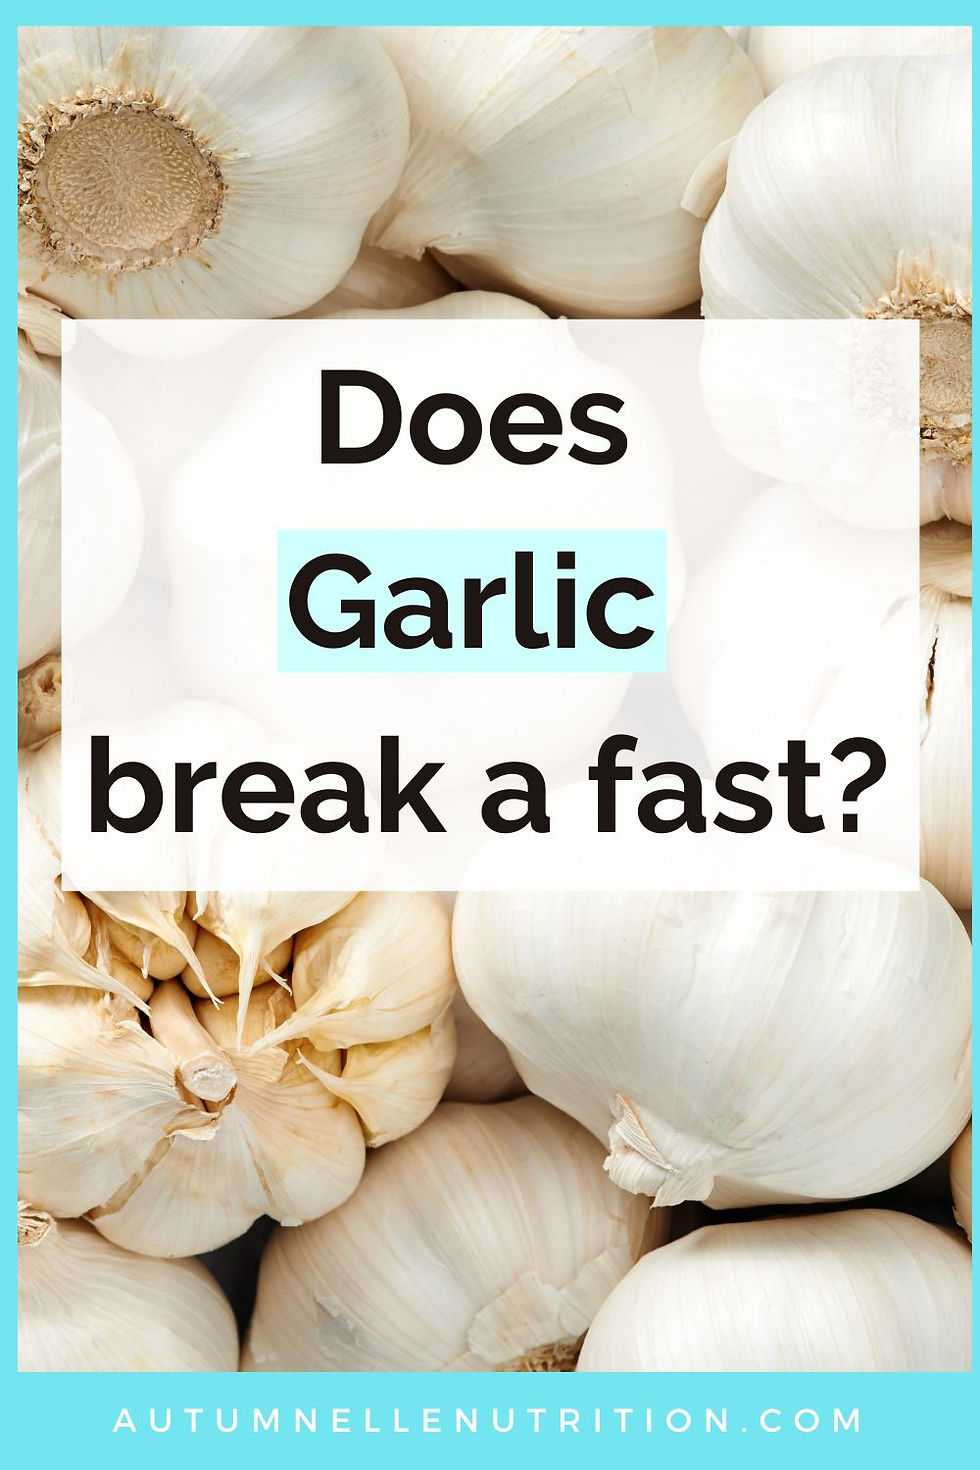 Does Garlic Break a Fast?